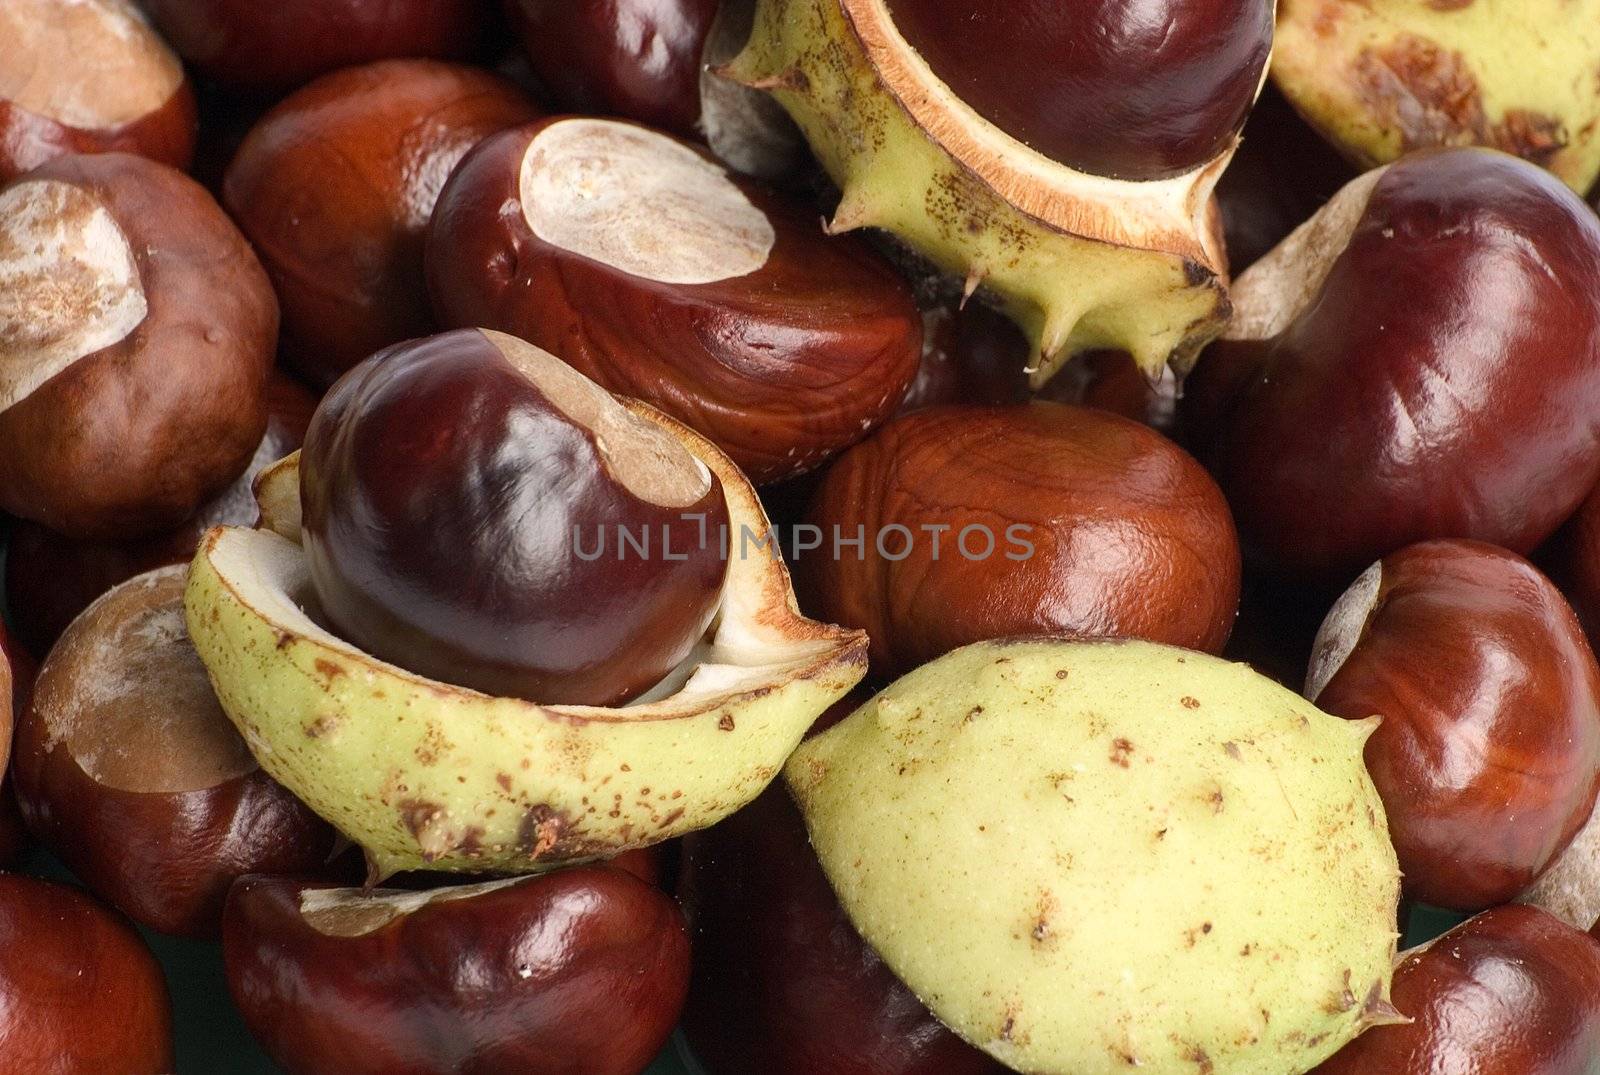 chestnuts by miradrozdowski